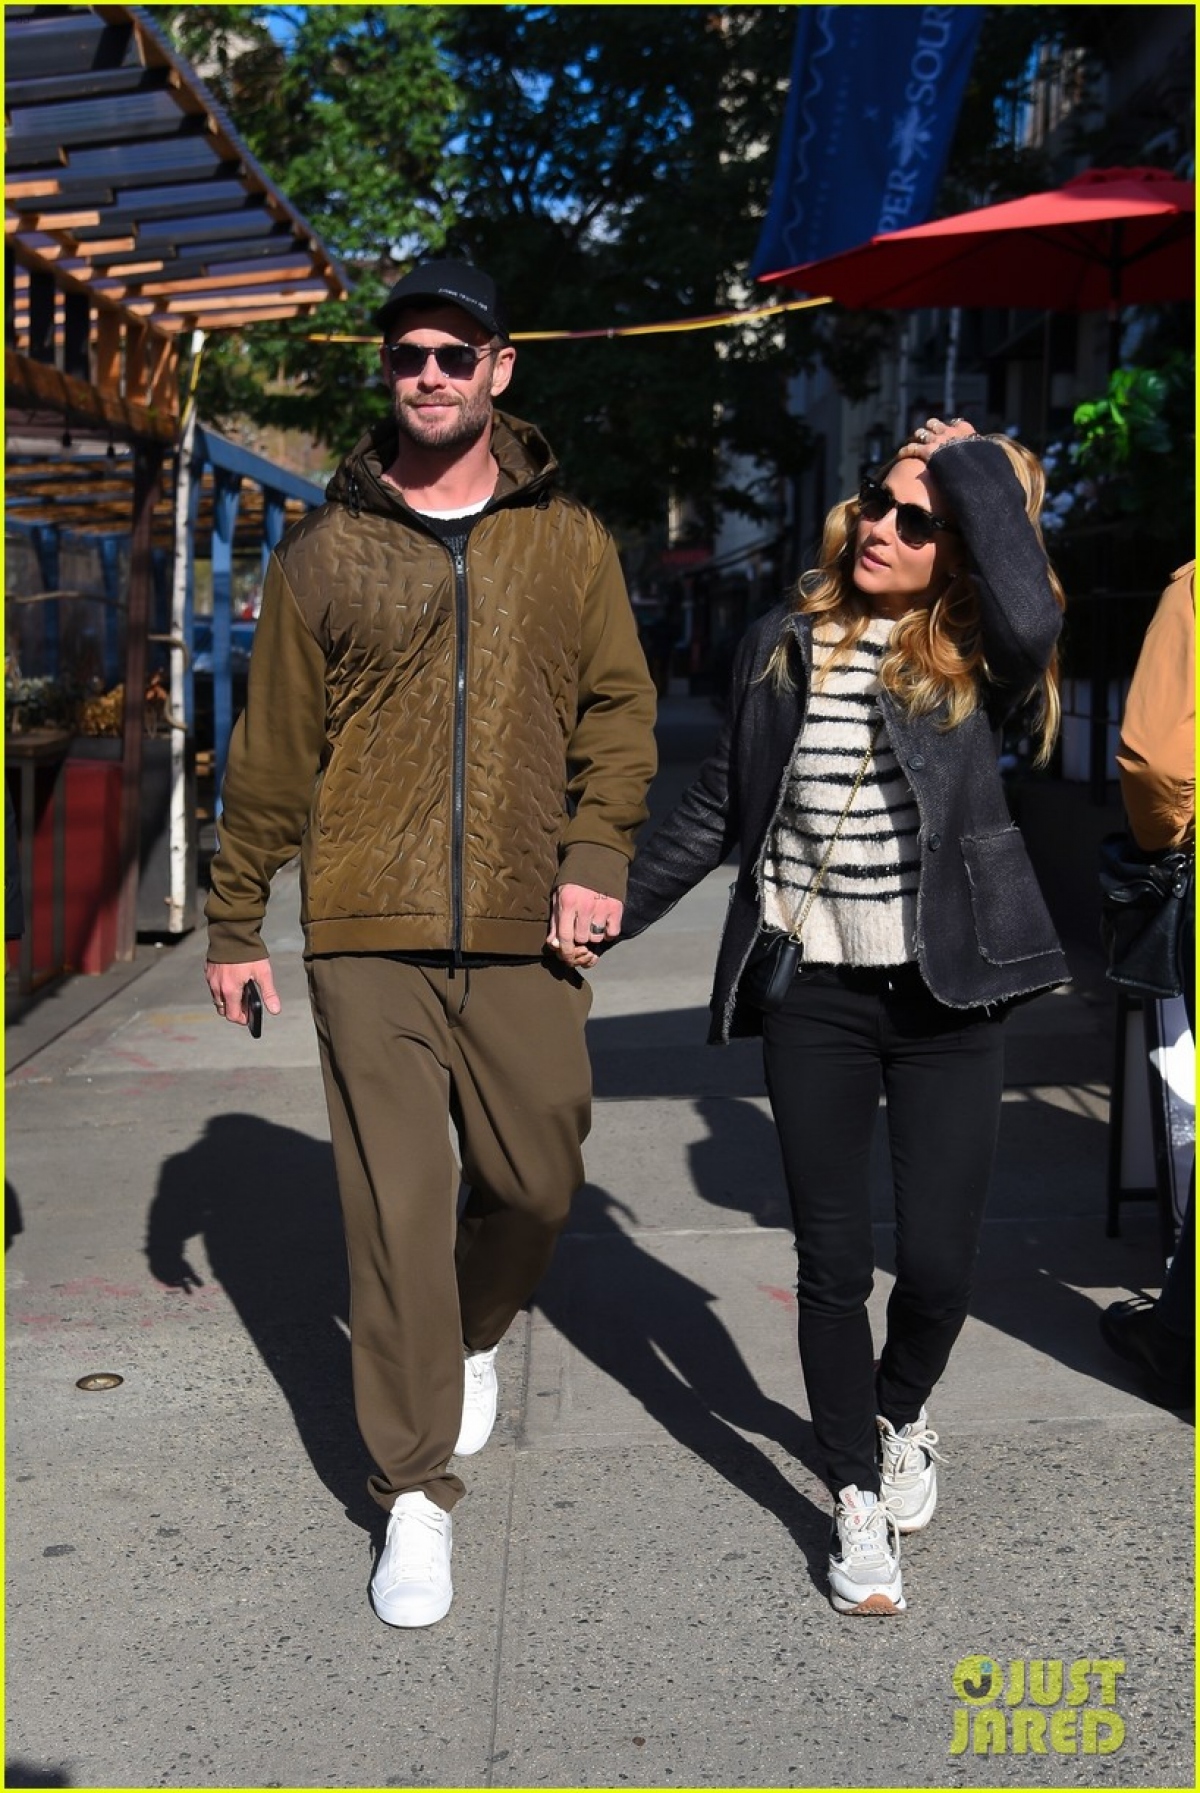 Thần sấm Chris Hemsworth và vợ hơn 7 tuổi nắm tay tình cảm đi dạo phố - Ảnh 8.